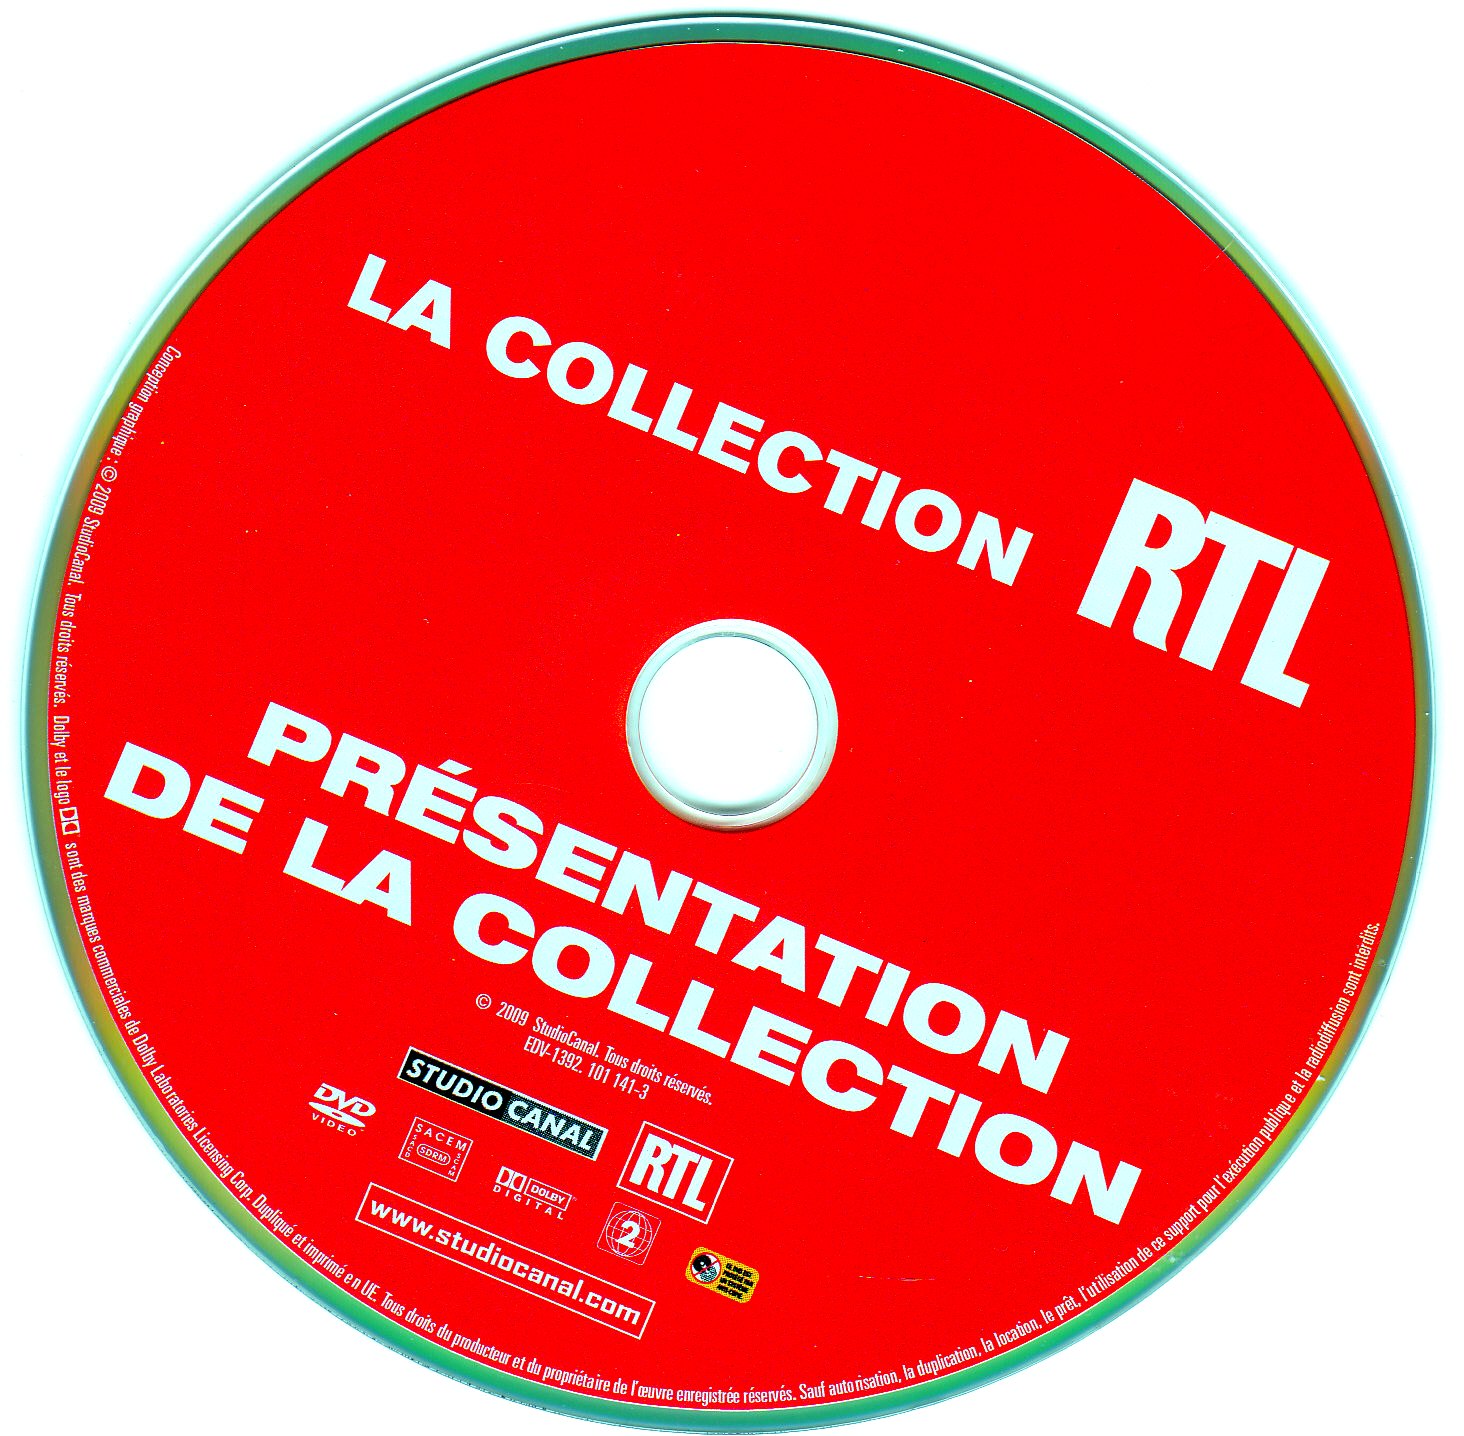 La collection RTL